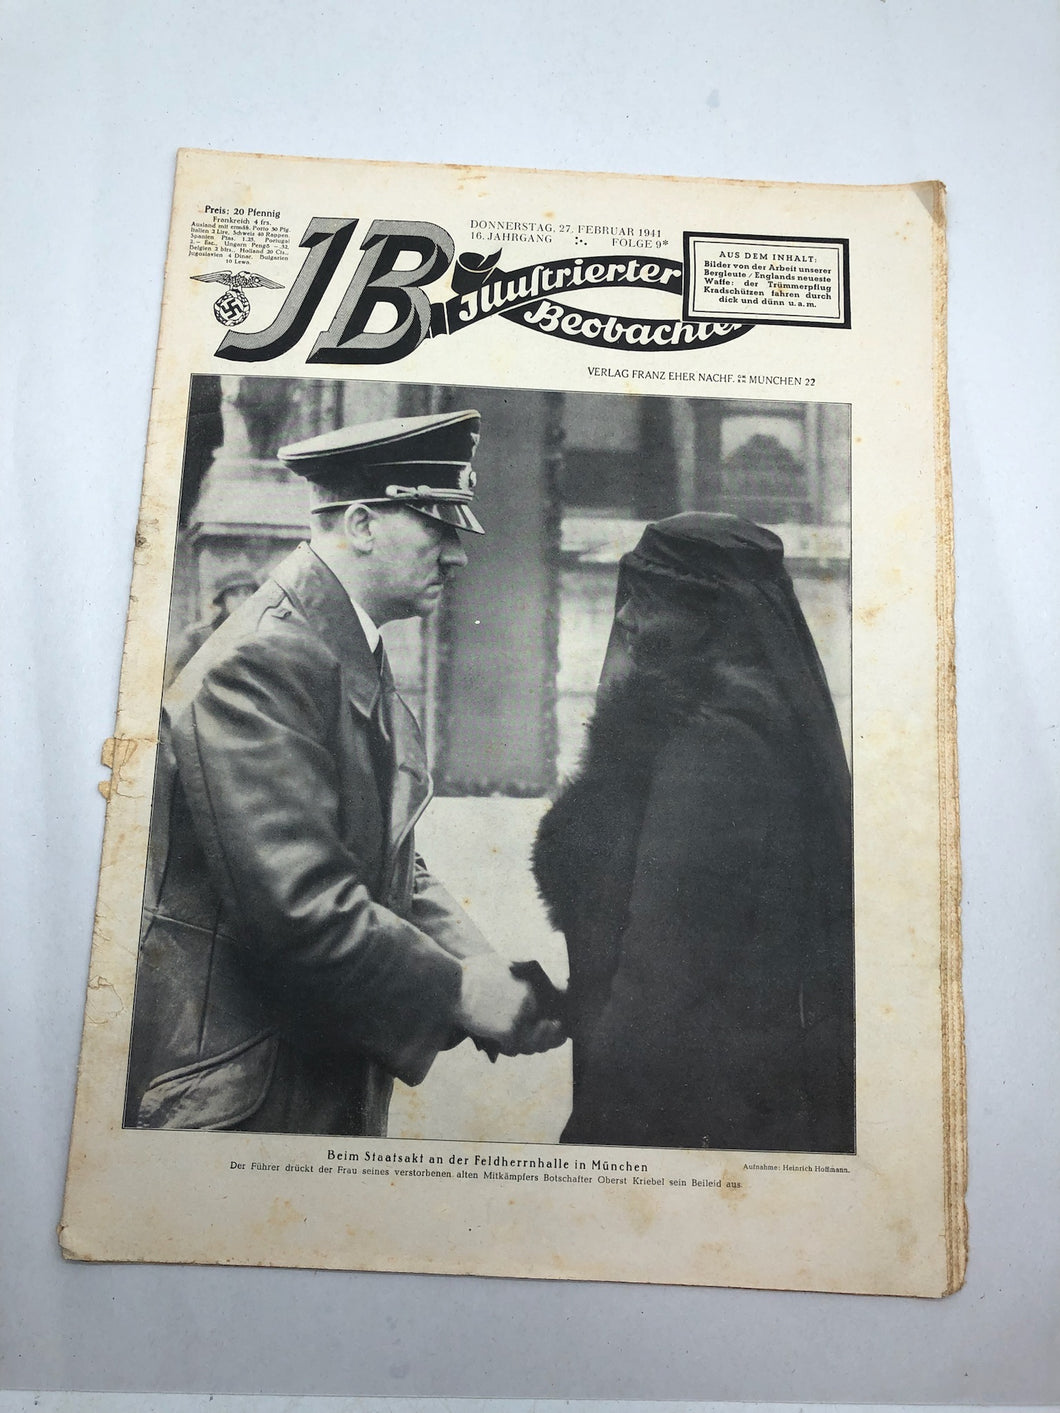 JB Juustrierter Beobachter NSDAP Magazine Original WW2 German - 27 February 1941